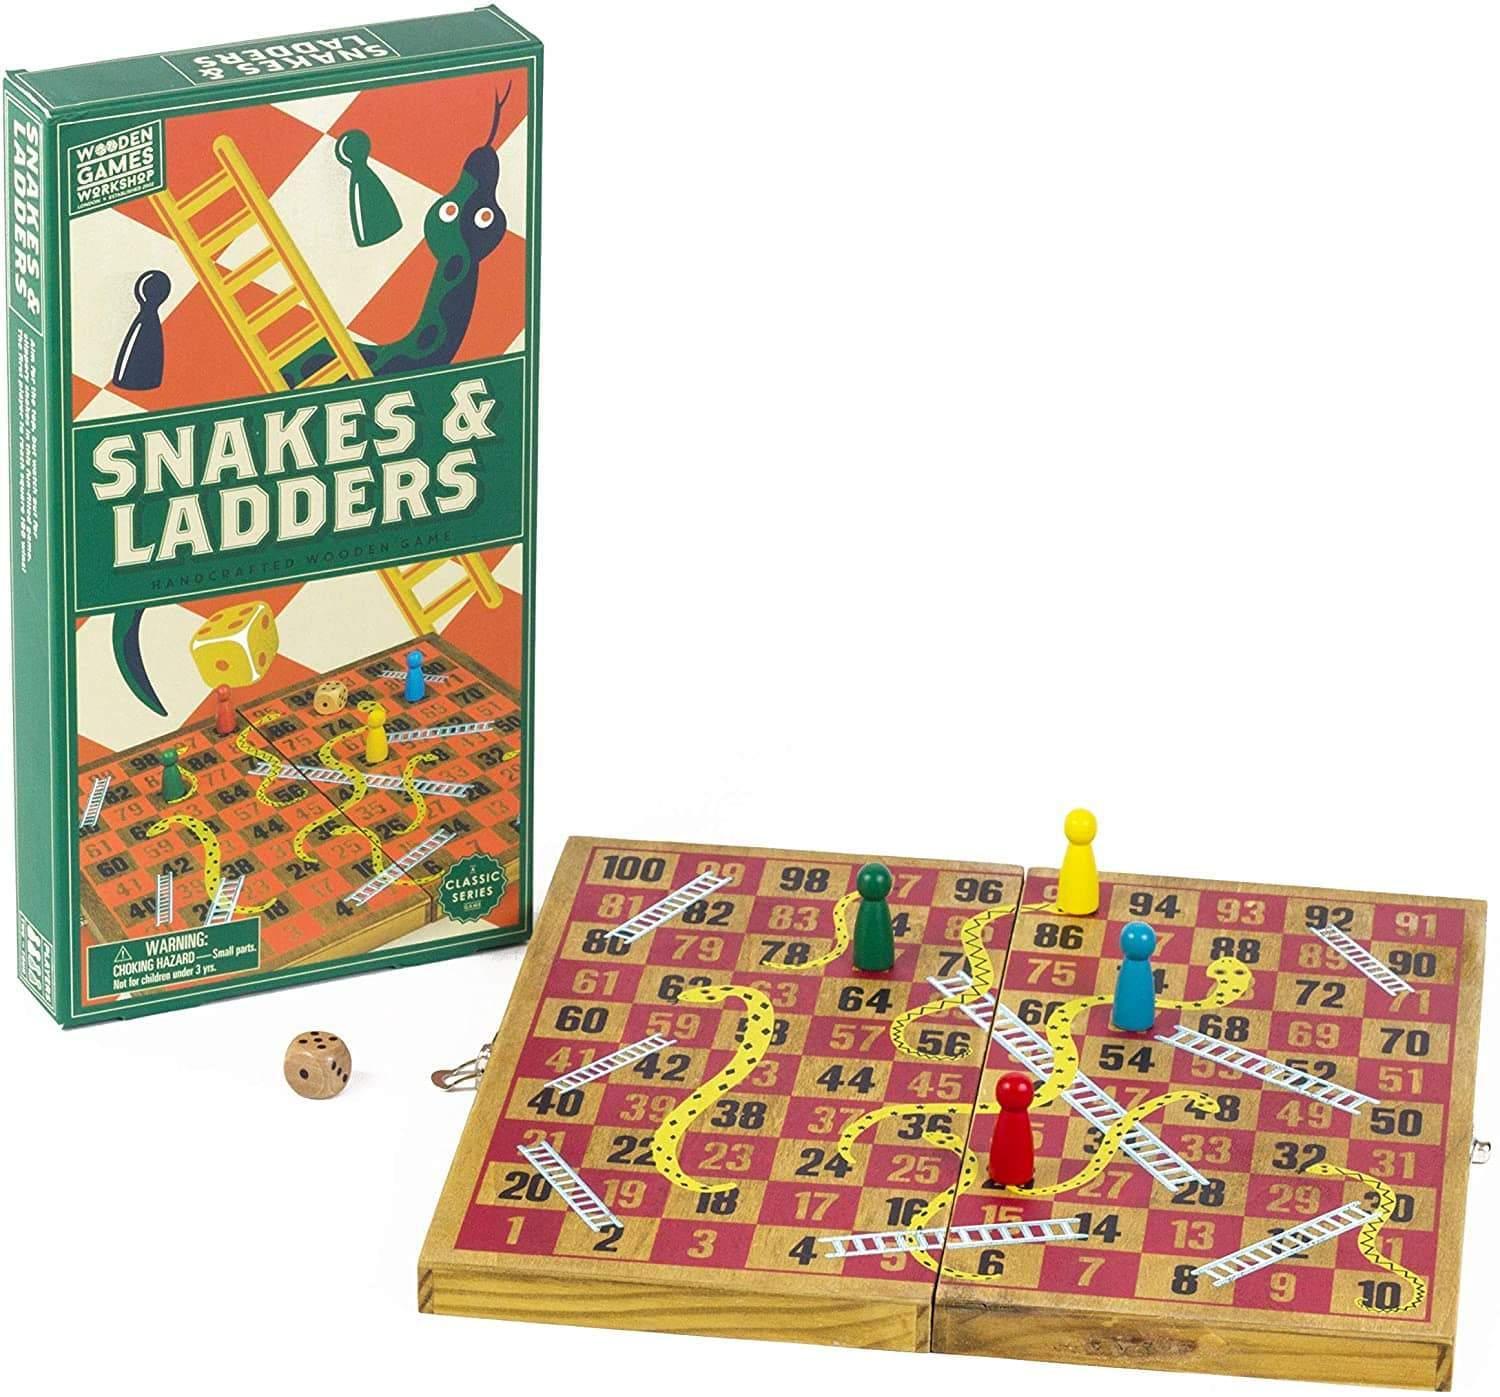 لعبة لغز الأفاعي والسلالم الخشبية Professor Puzzle - WOODEN SNAKES AND LADDERS - cG9zdDo1ODI0OA==